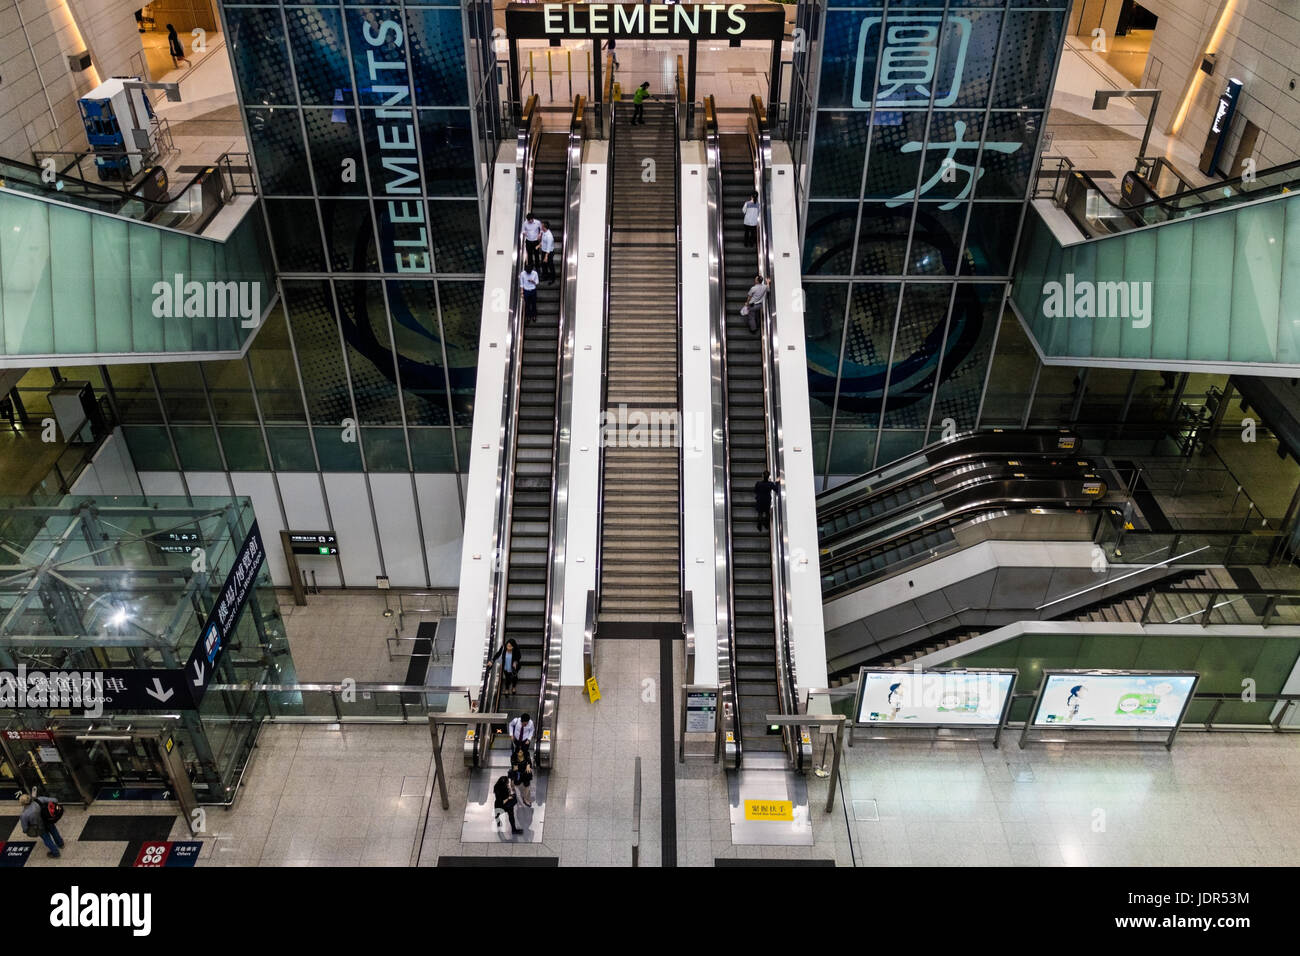 Elementos mall señal de entrada en Kowloon, Hong kong Foto de stock